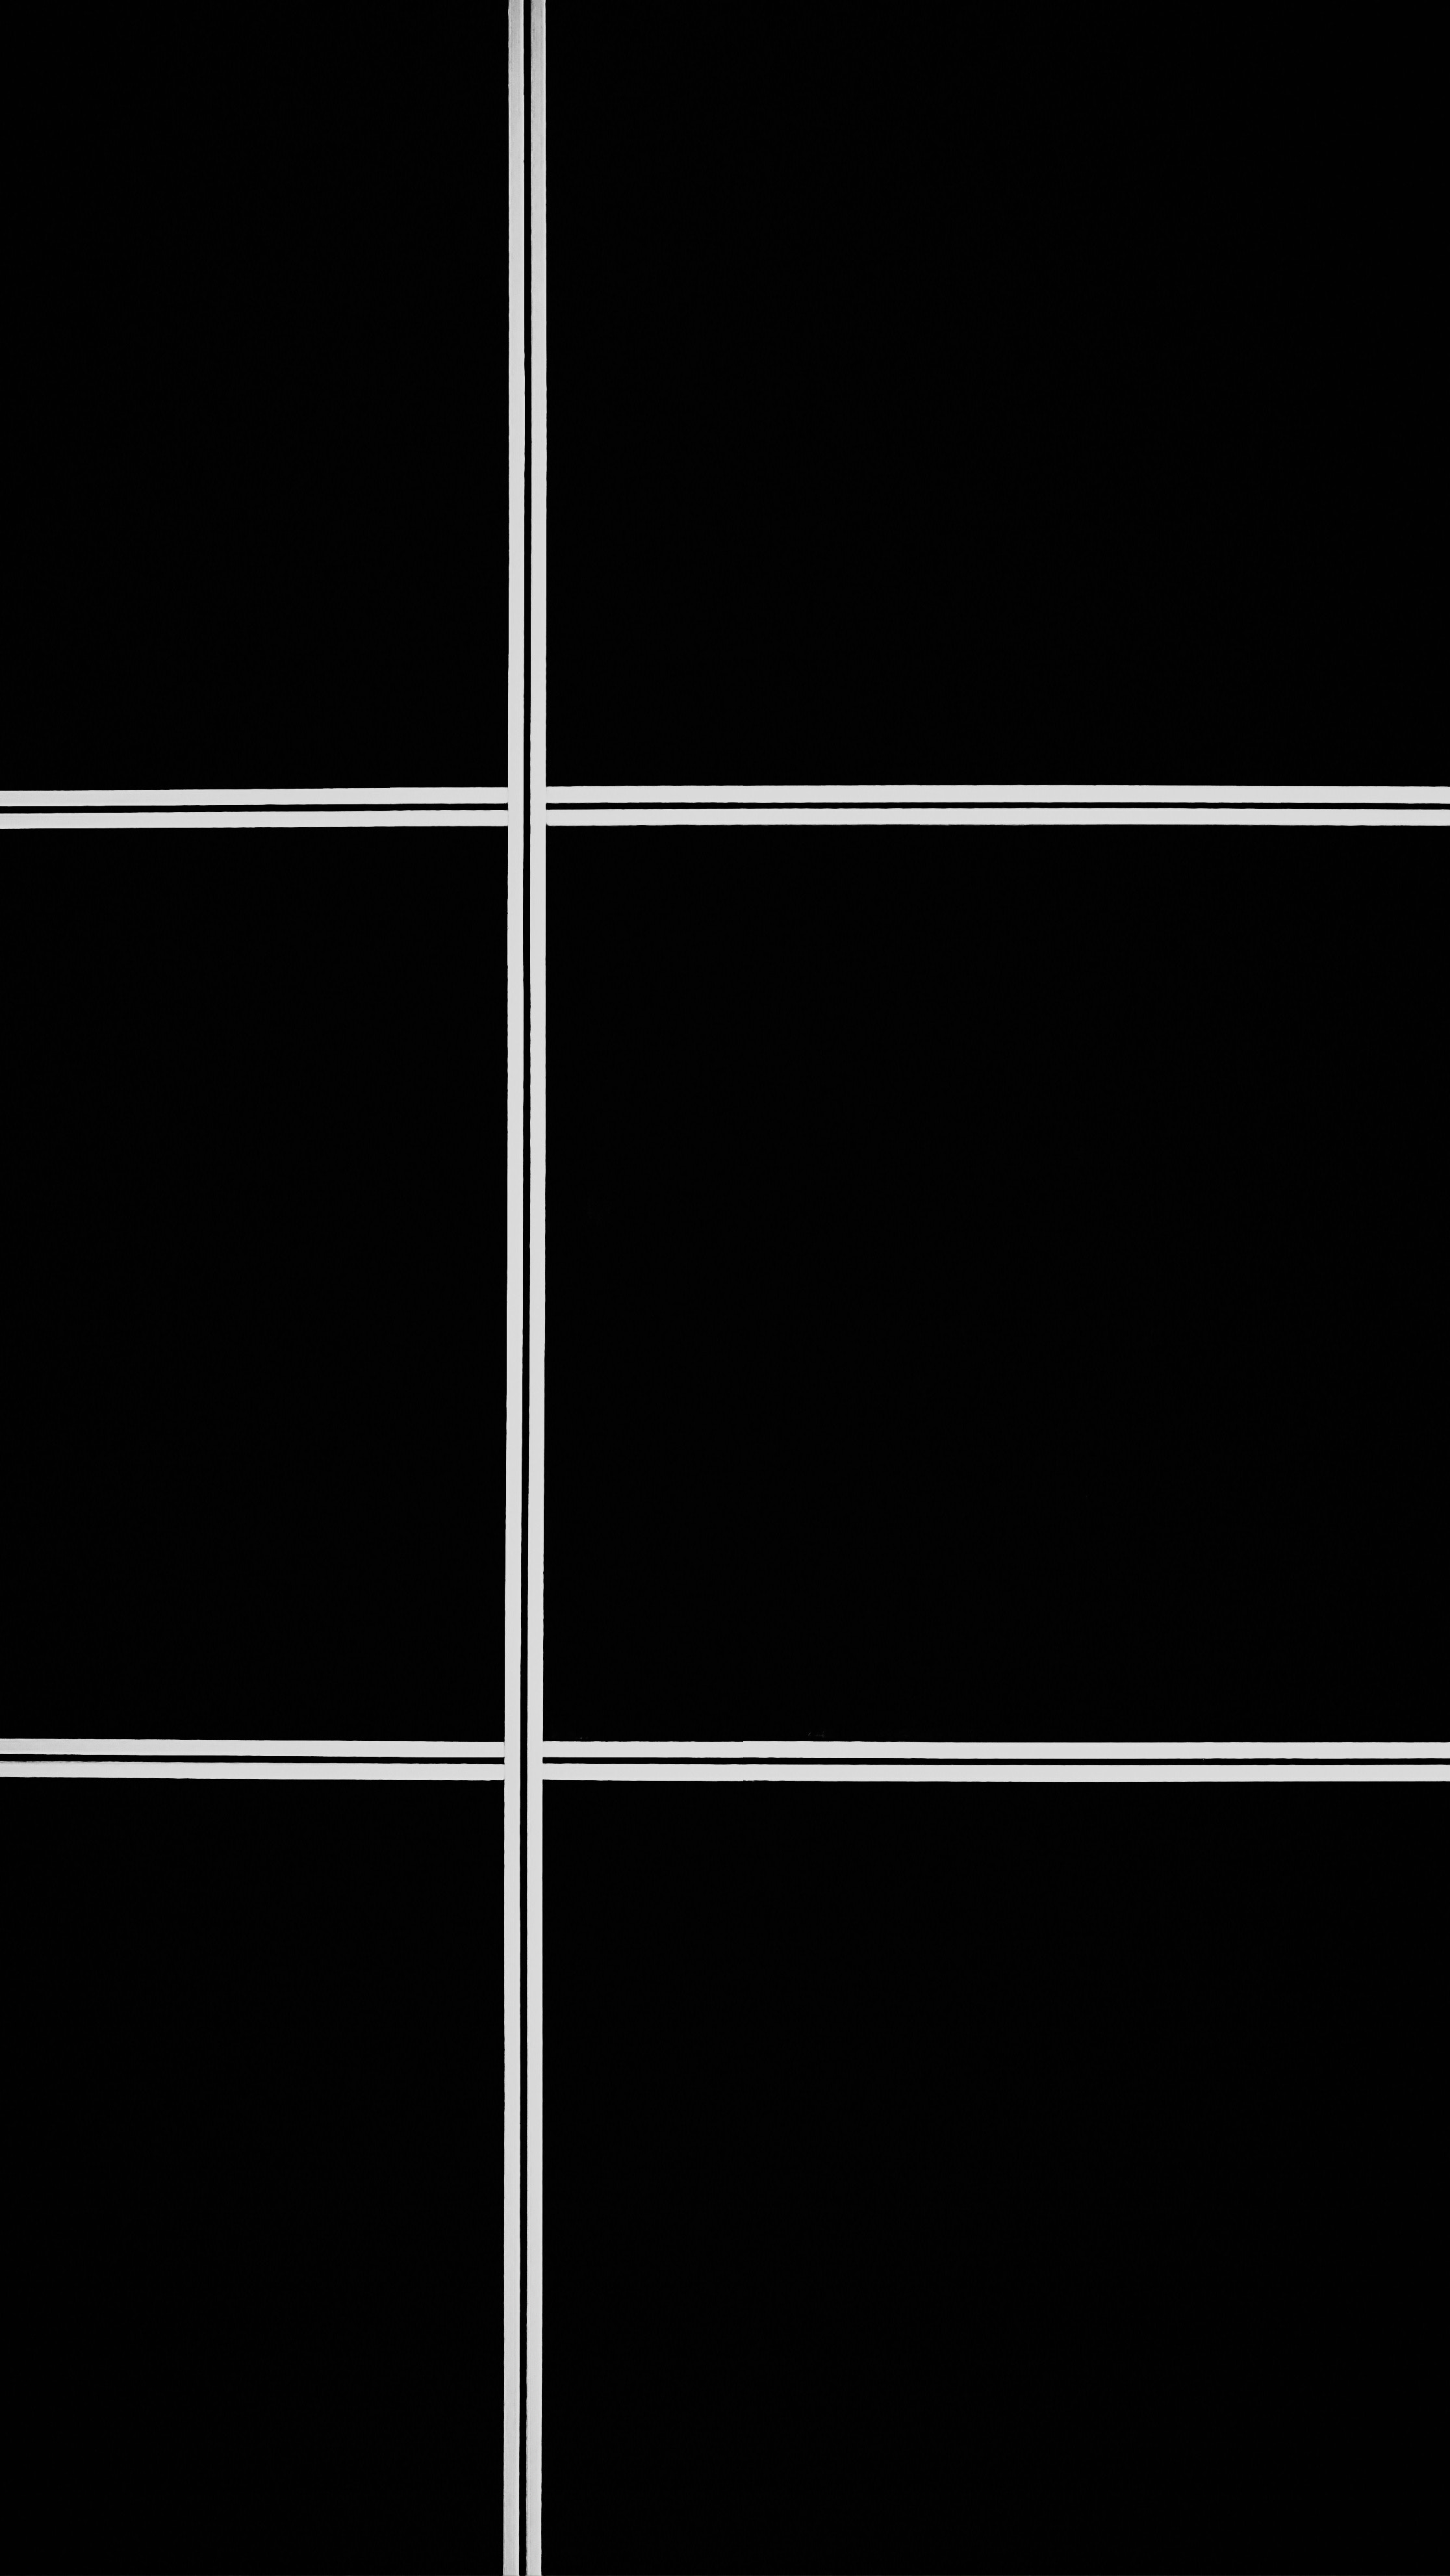 Phone Background white, bw, minimalism, lines